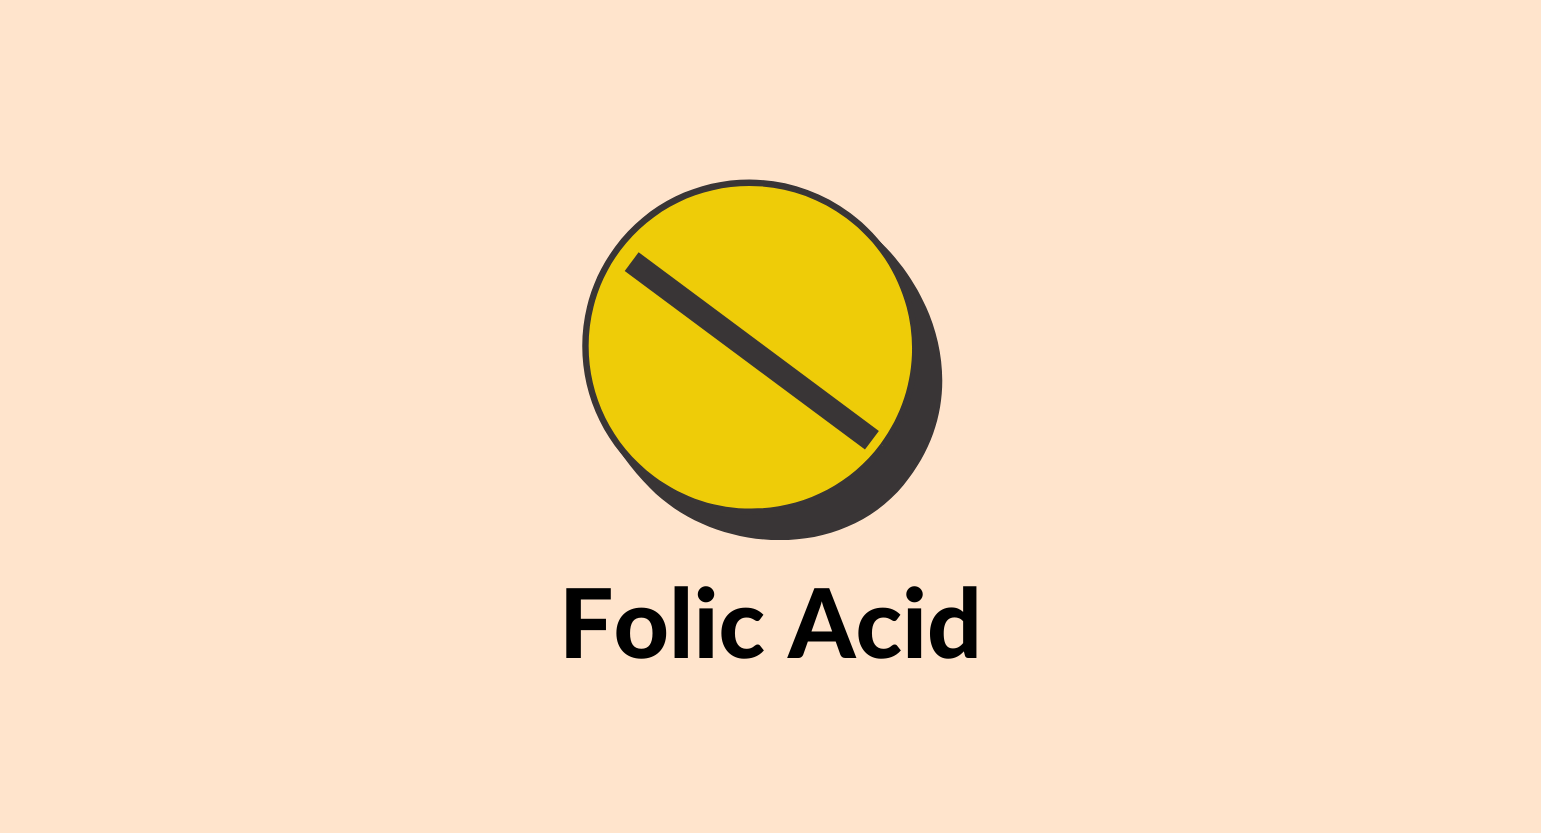 Illustration of a folic acid tablet.